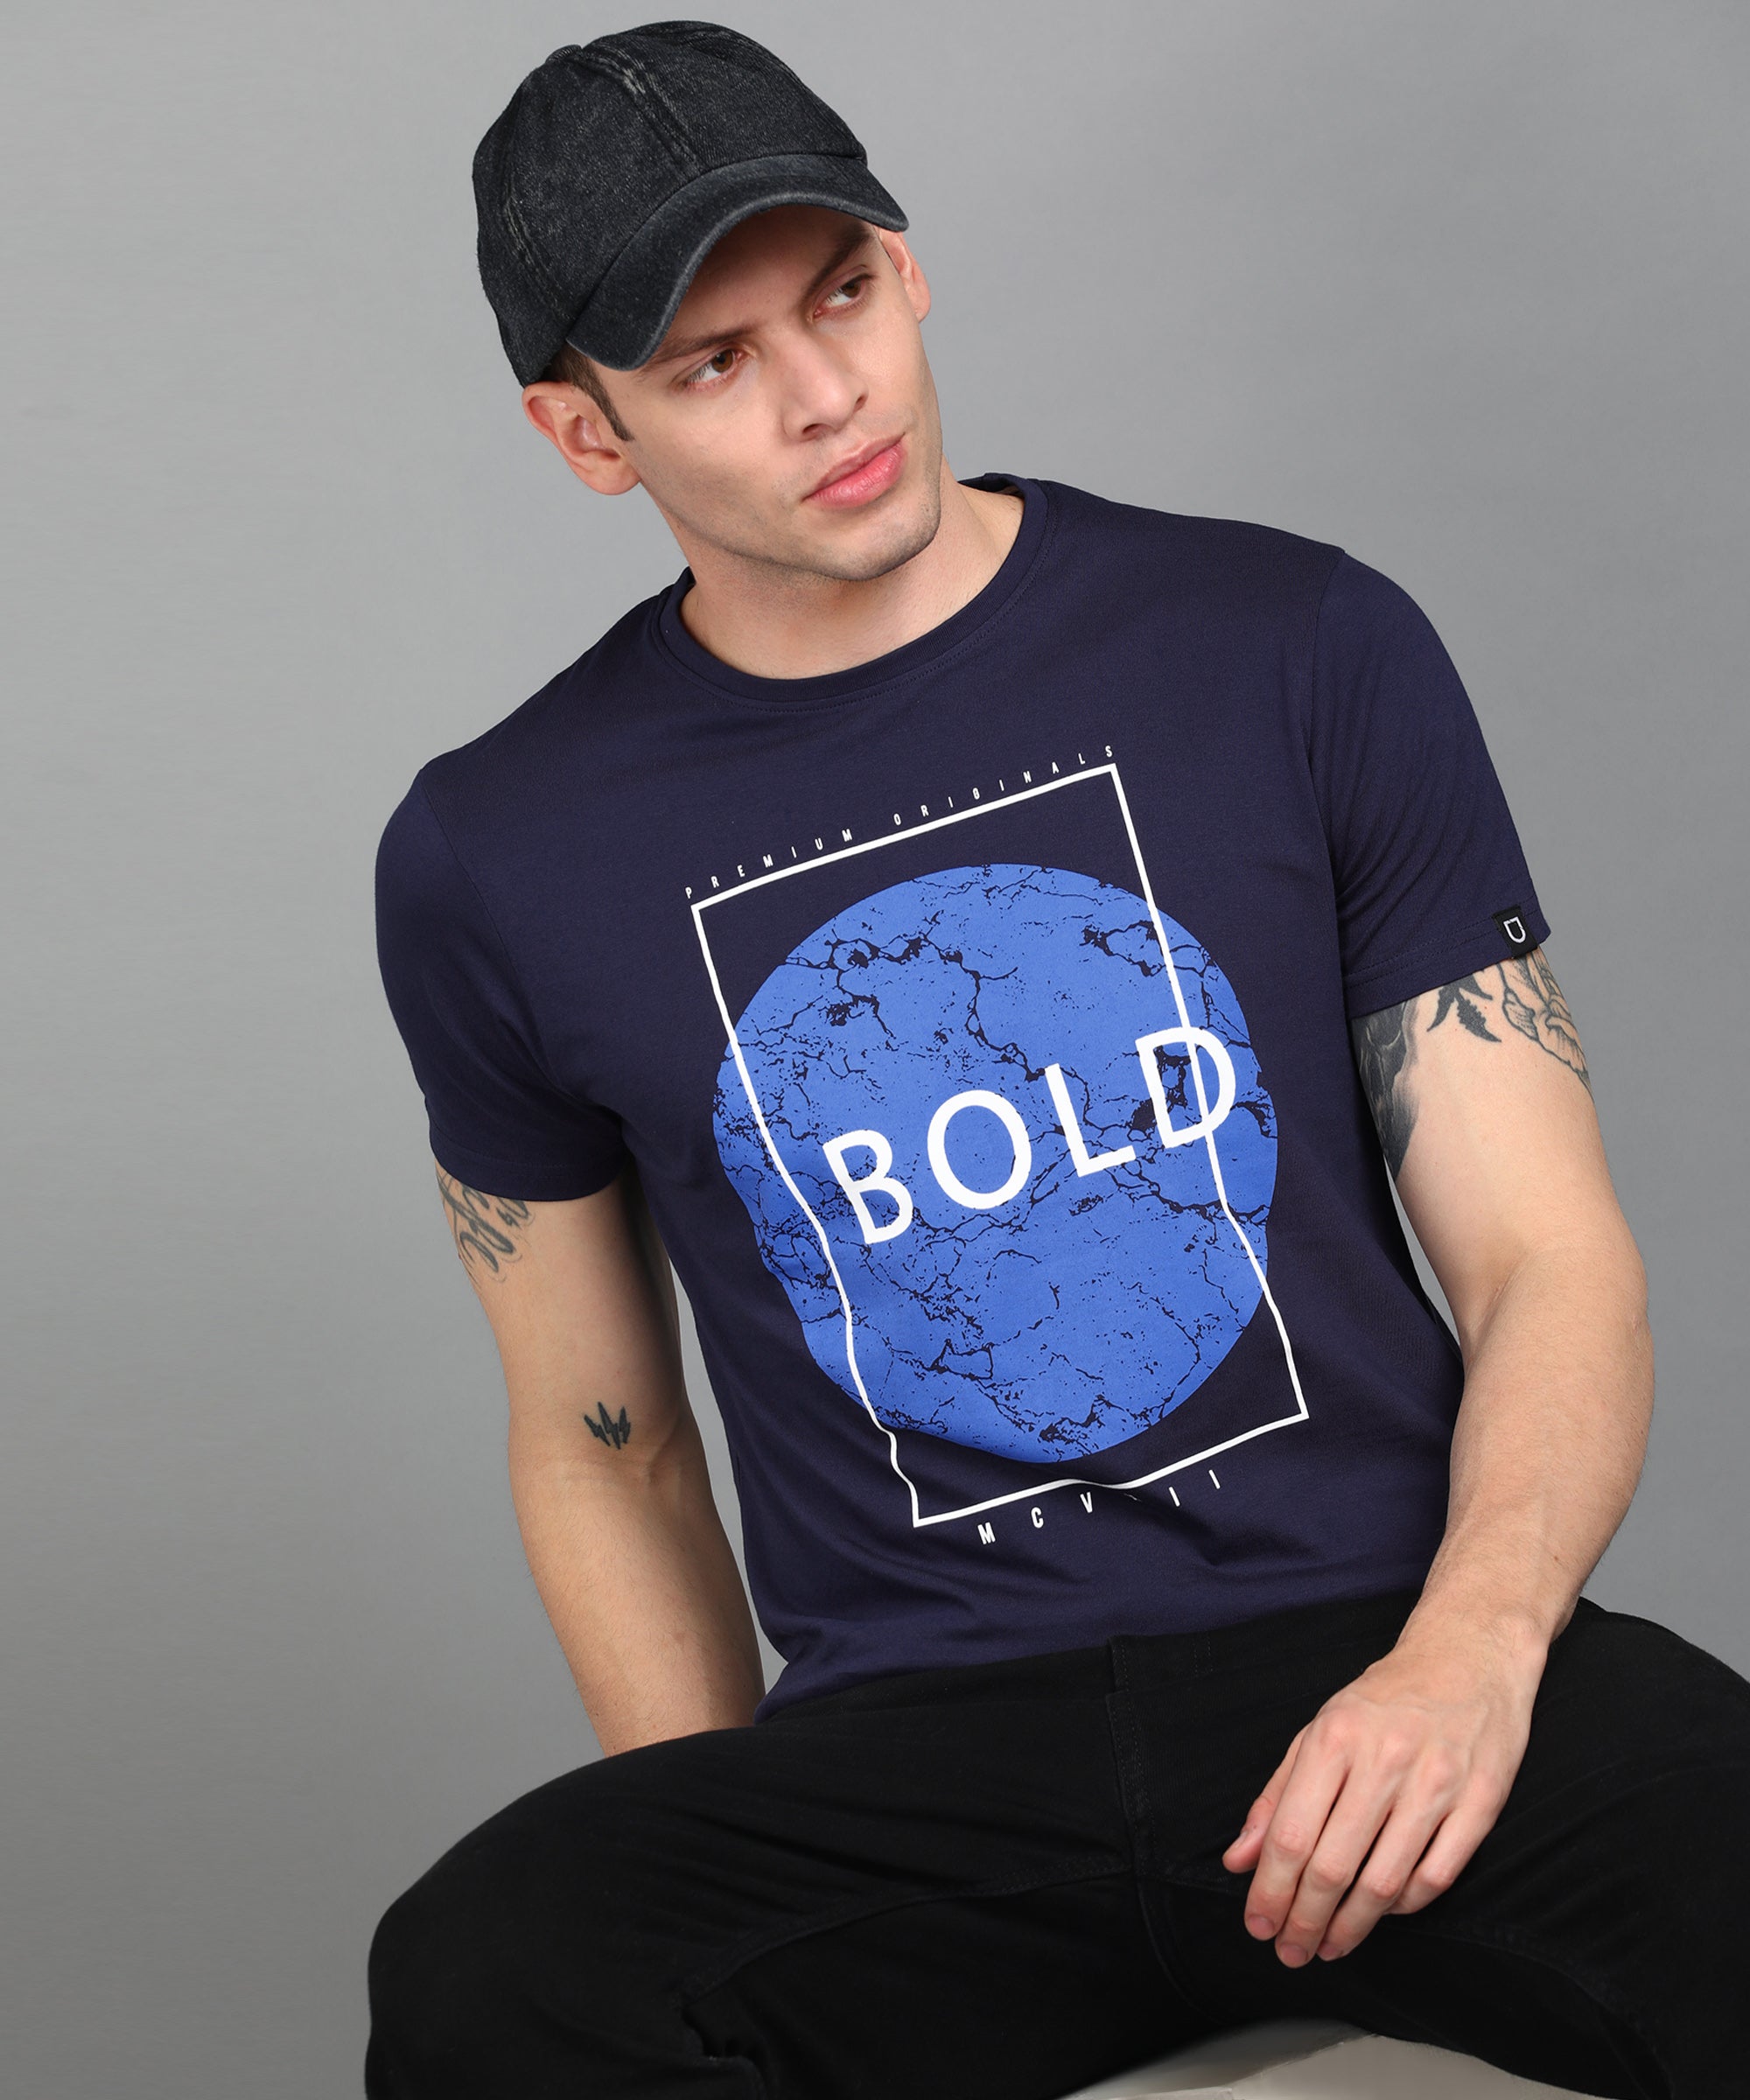 Urbano Fashion Men's Dark Blue Graphic Printed Round Neck Half Sleeve Slim Fit Cotton T-Shirt